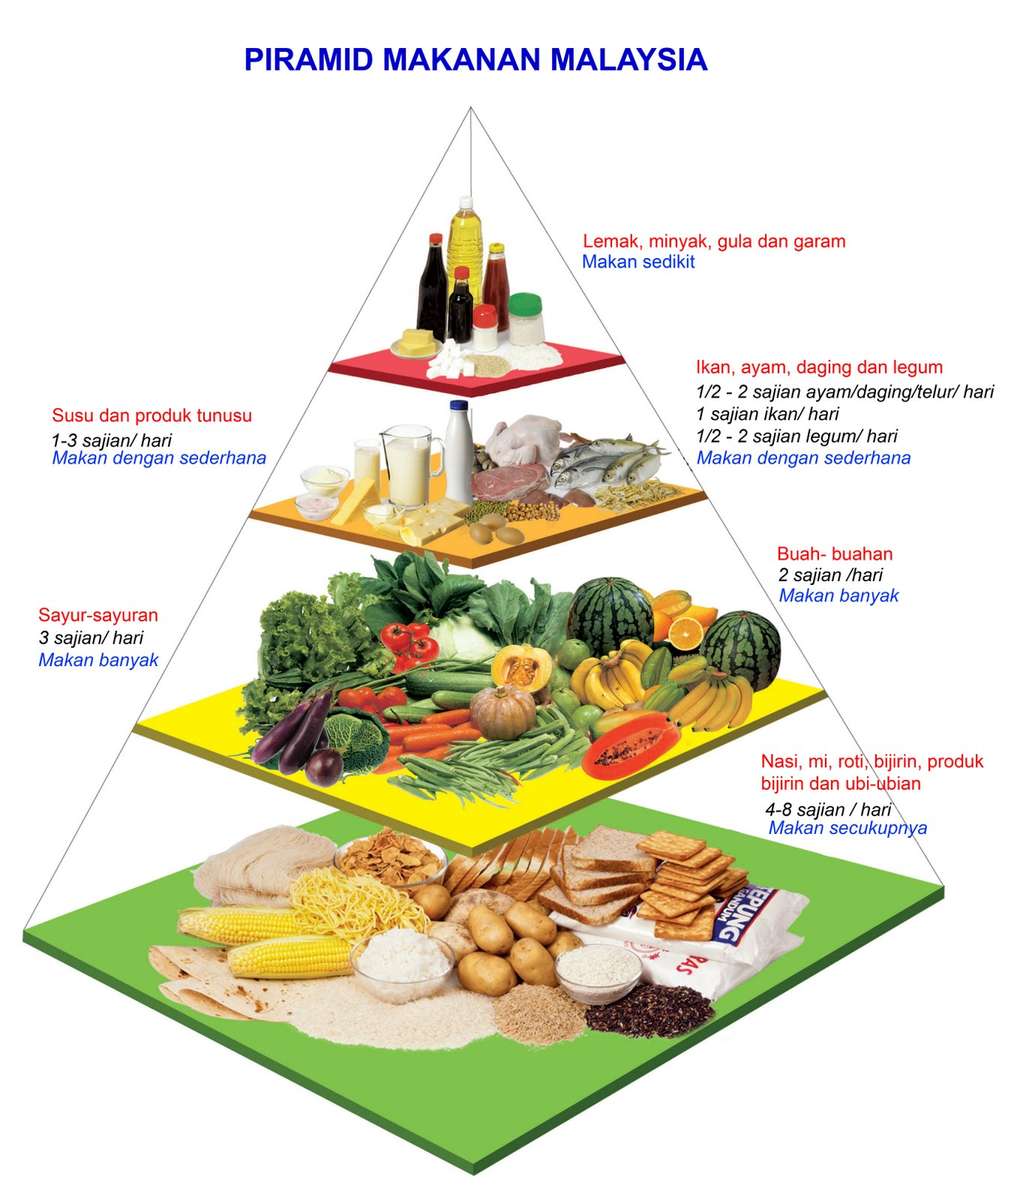 Pirámide Makanan rompecabezas en línea